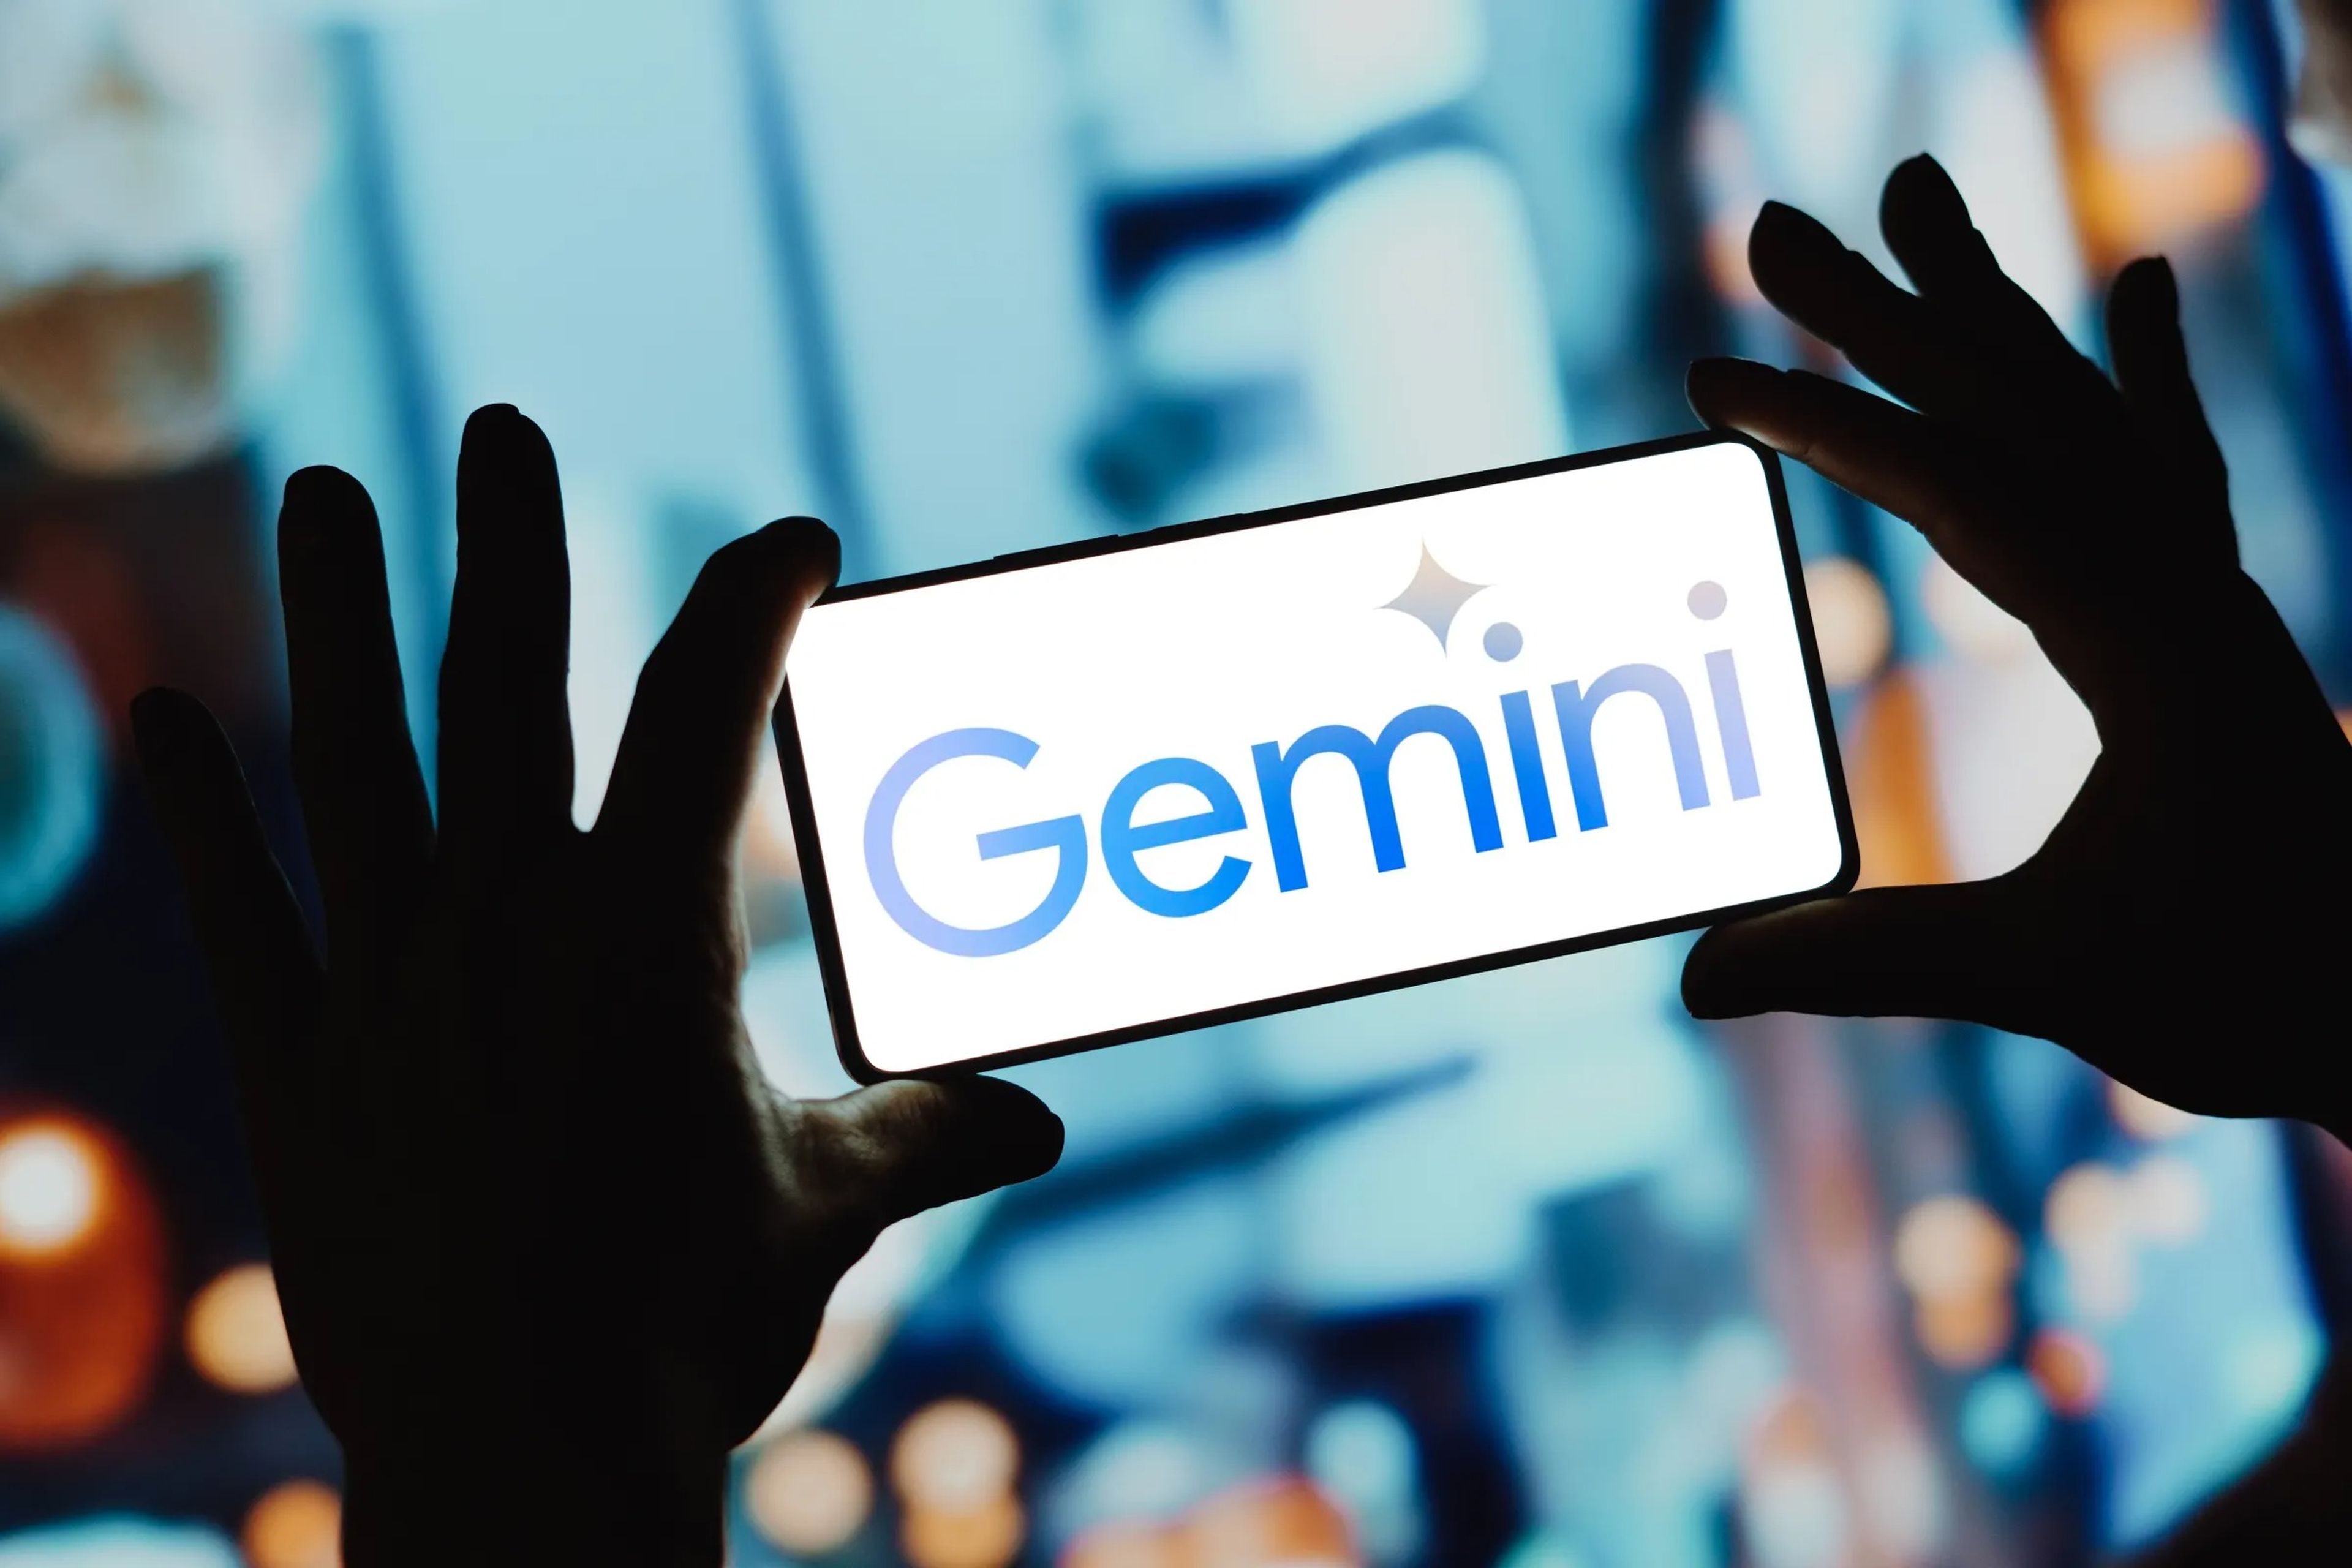 El logo del asistente de inteligencia artificial de Google, Gemini, en la pantalla de un smartphone.